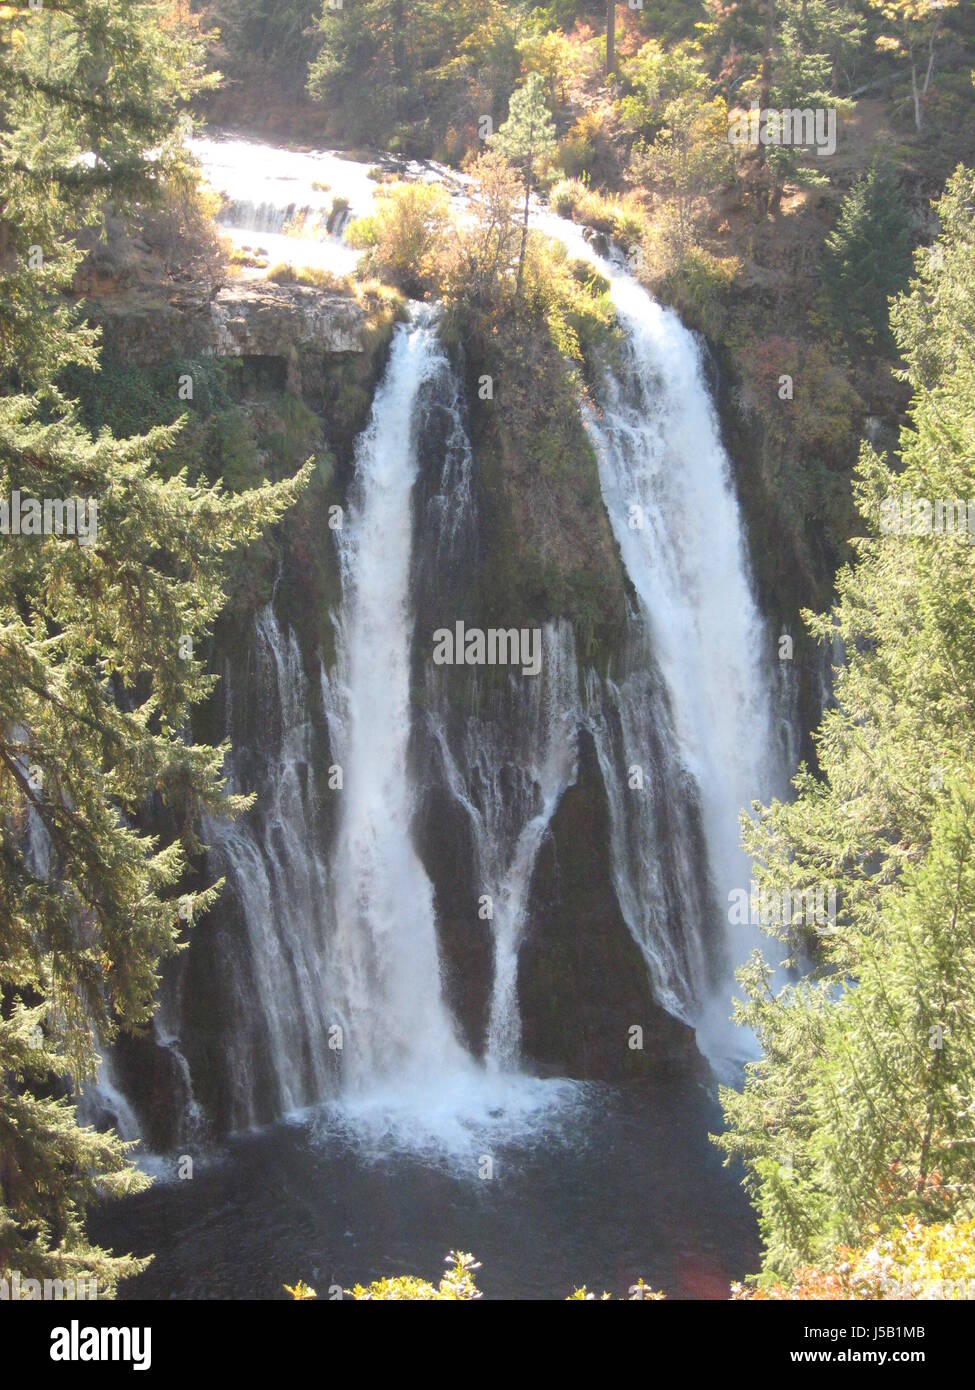 Burney falls, Burney California Stock Photo